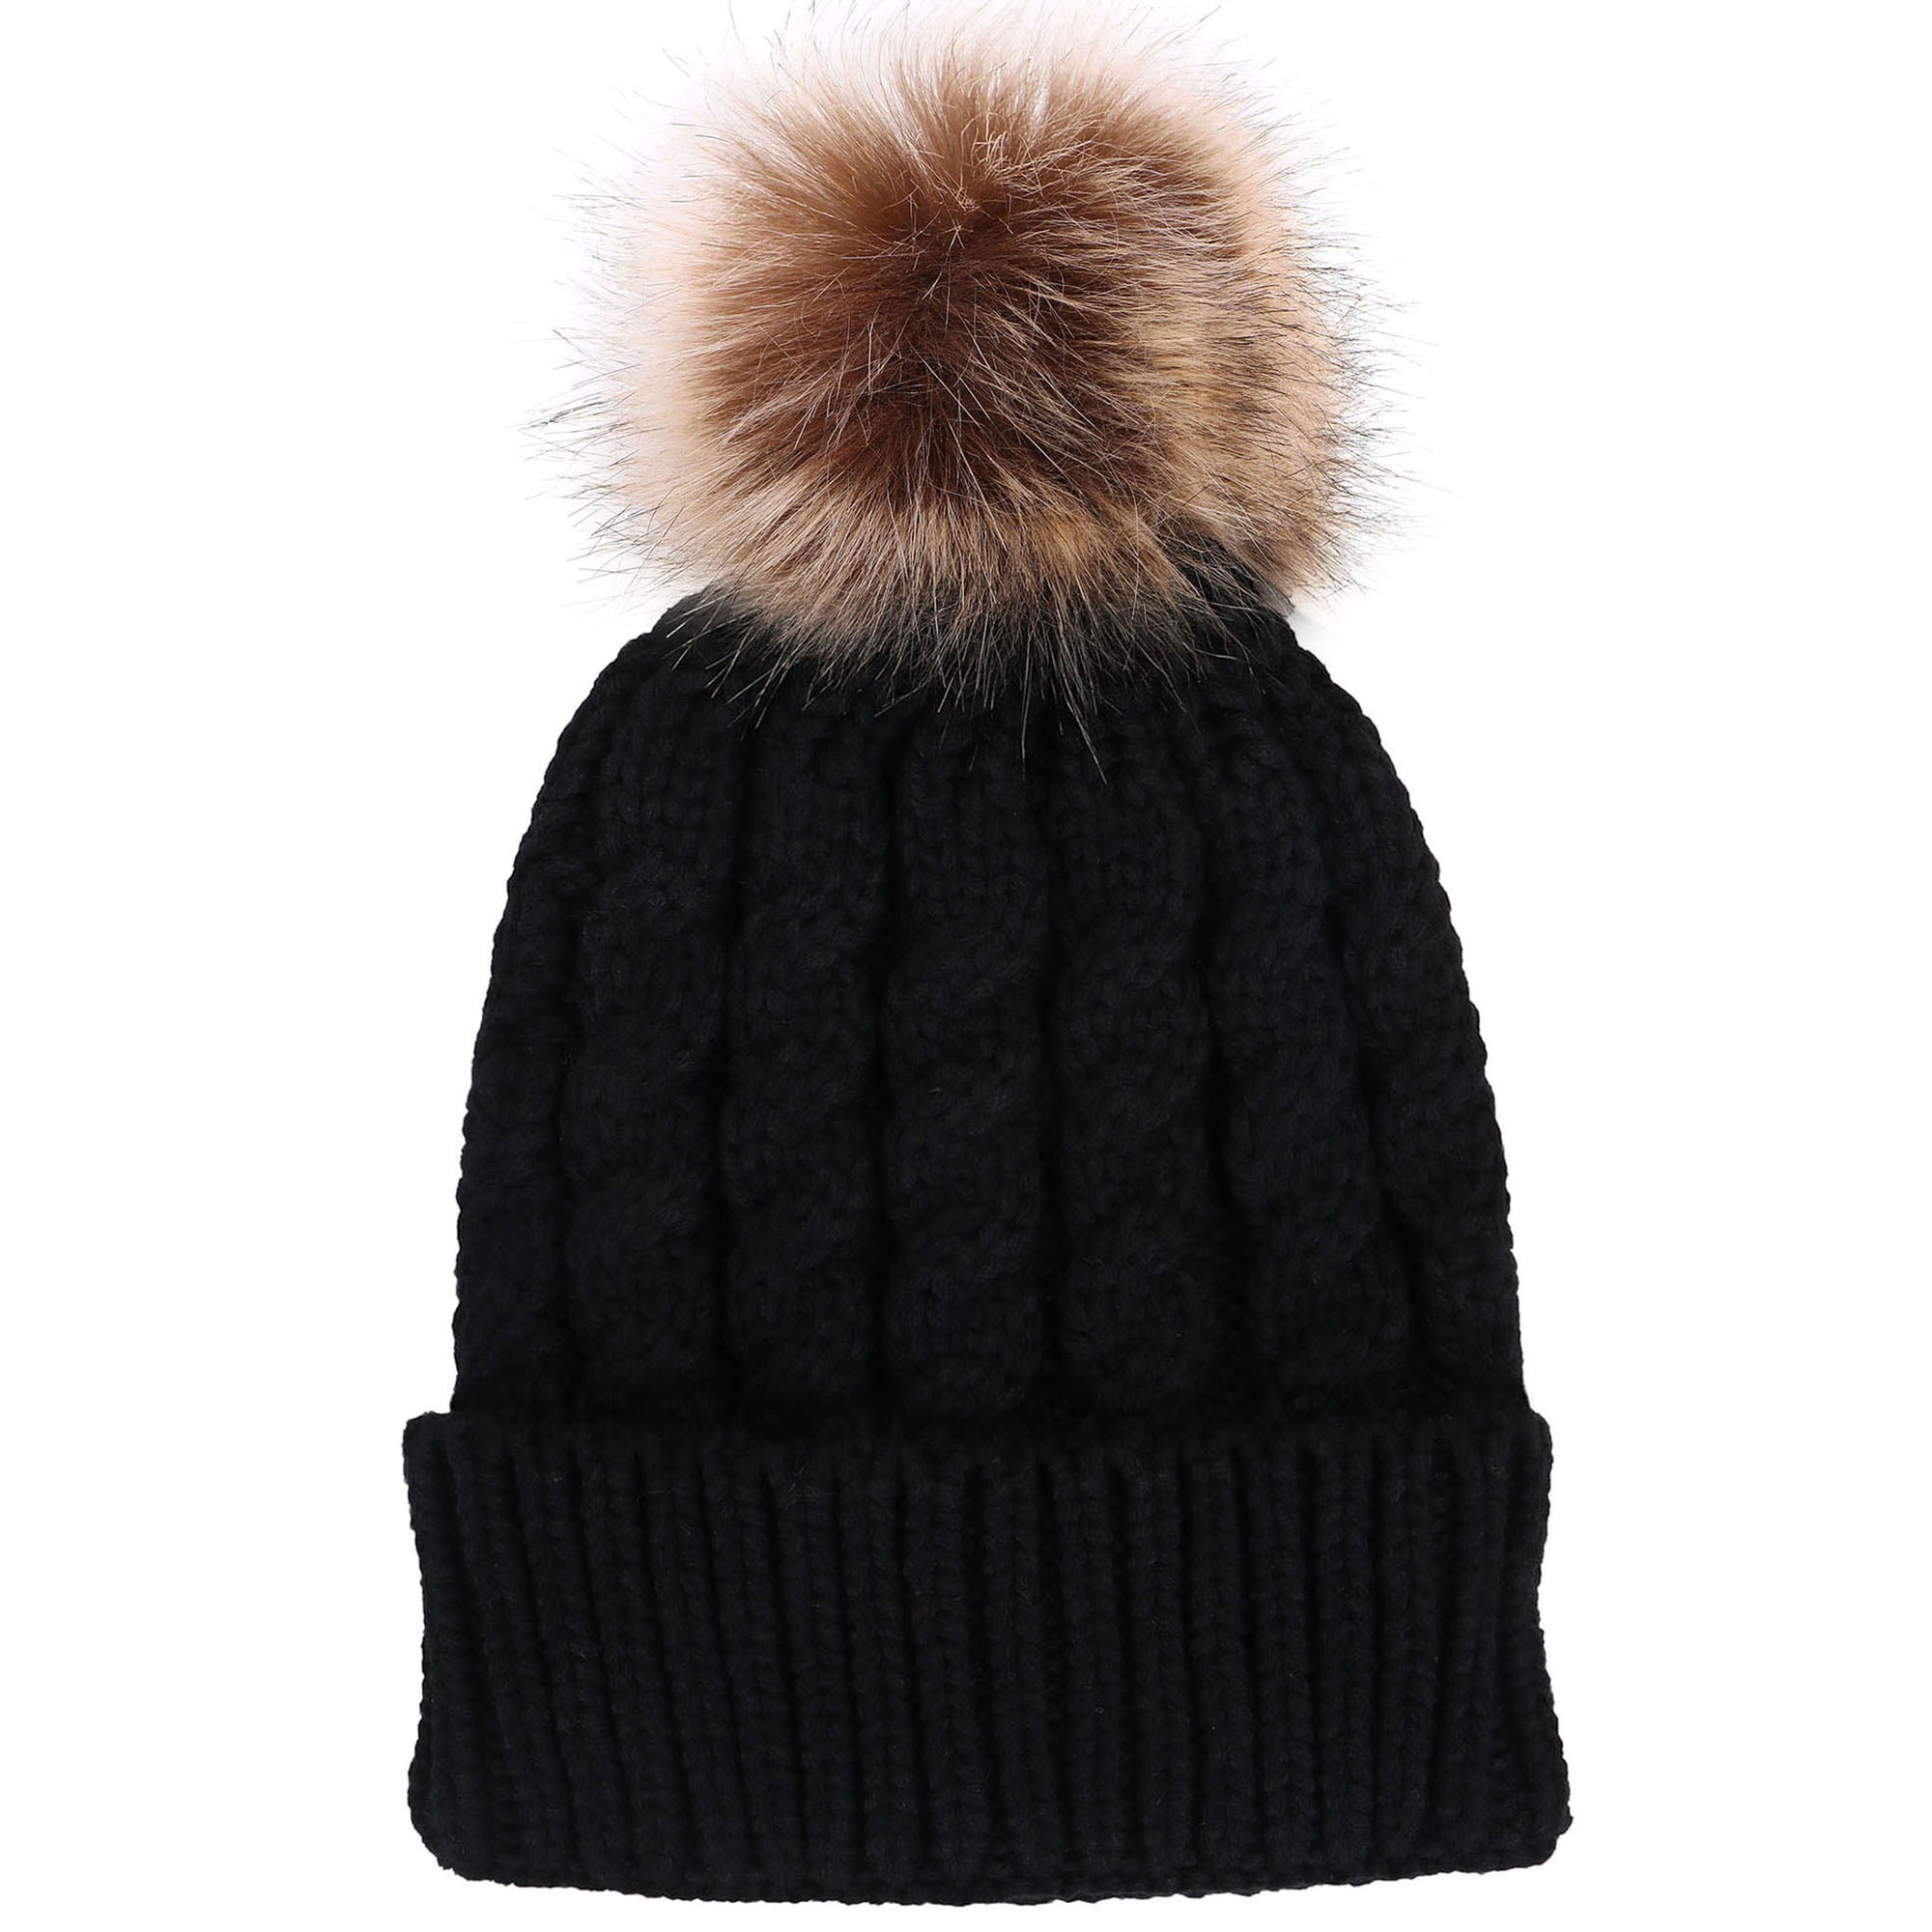 Men / Women's Winter Handcraft Knit Faux Fur Pom Beanie Hat Black ...